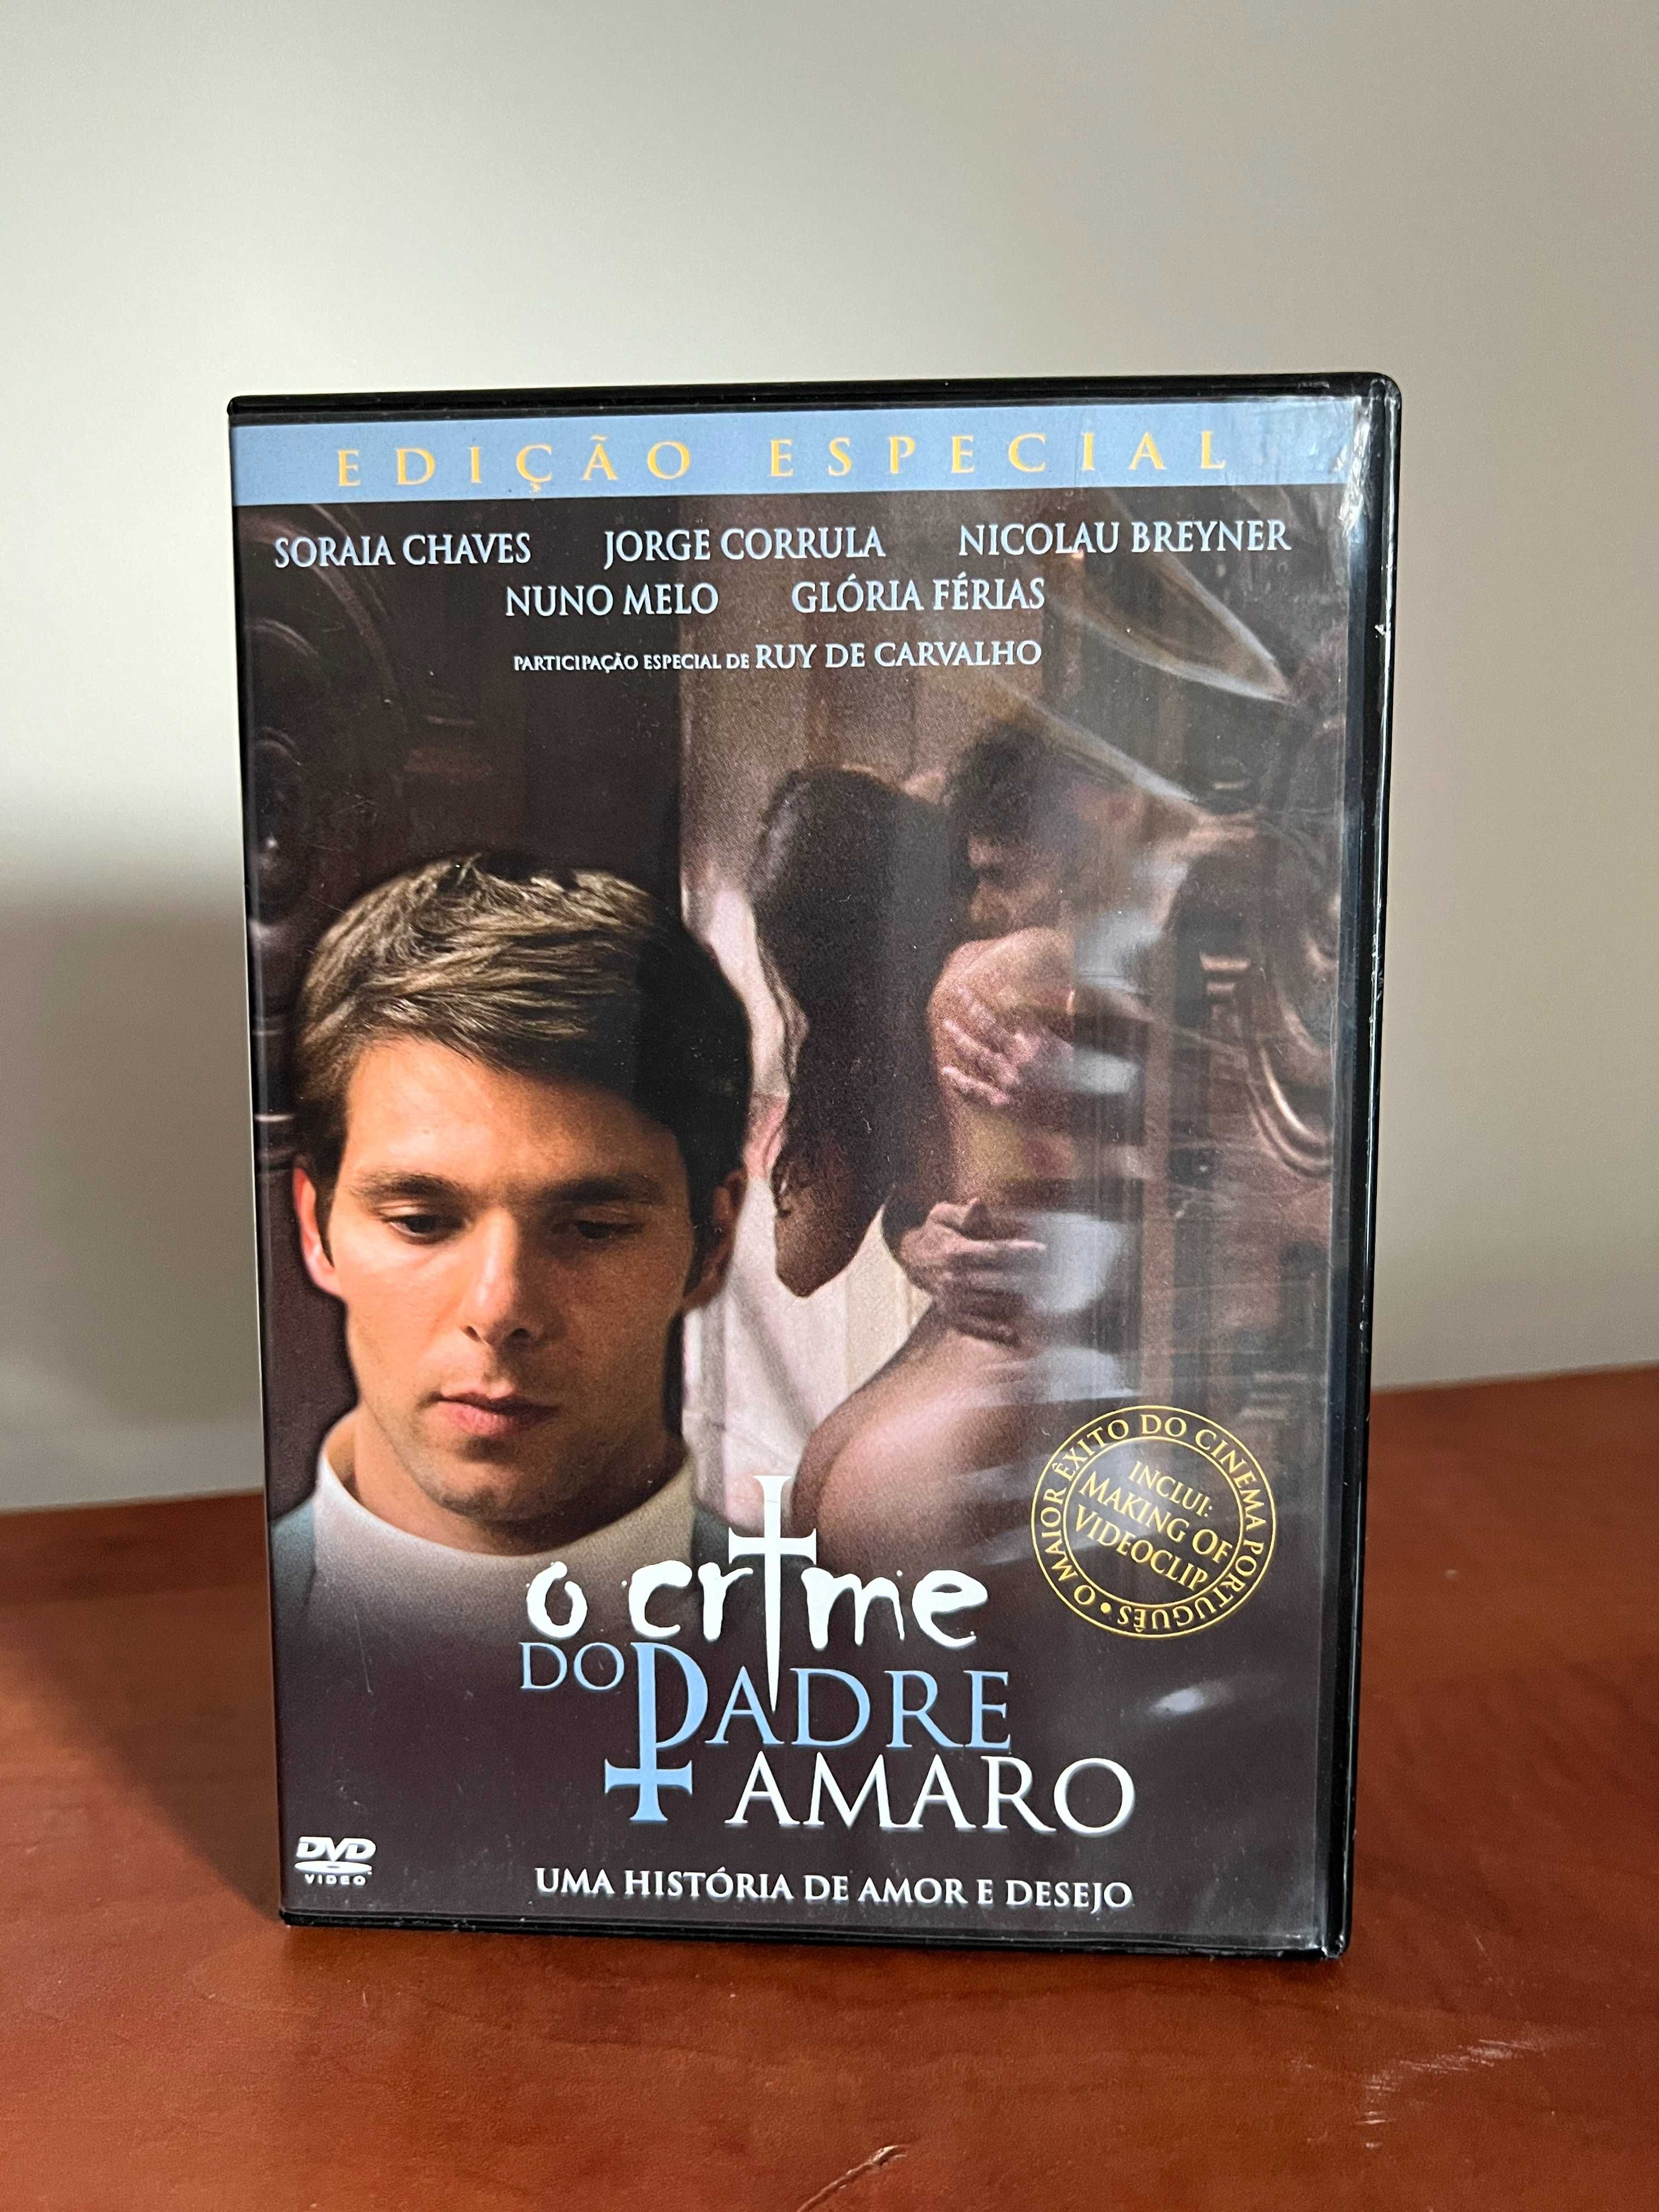 Filmes Portugueses DVD - Parte II